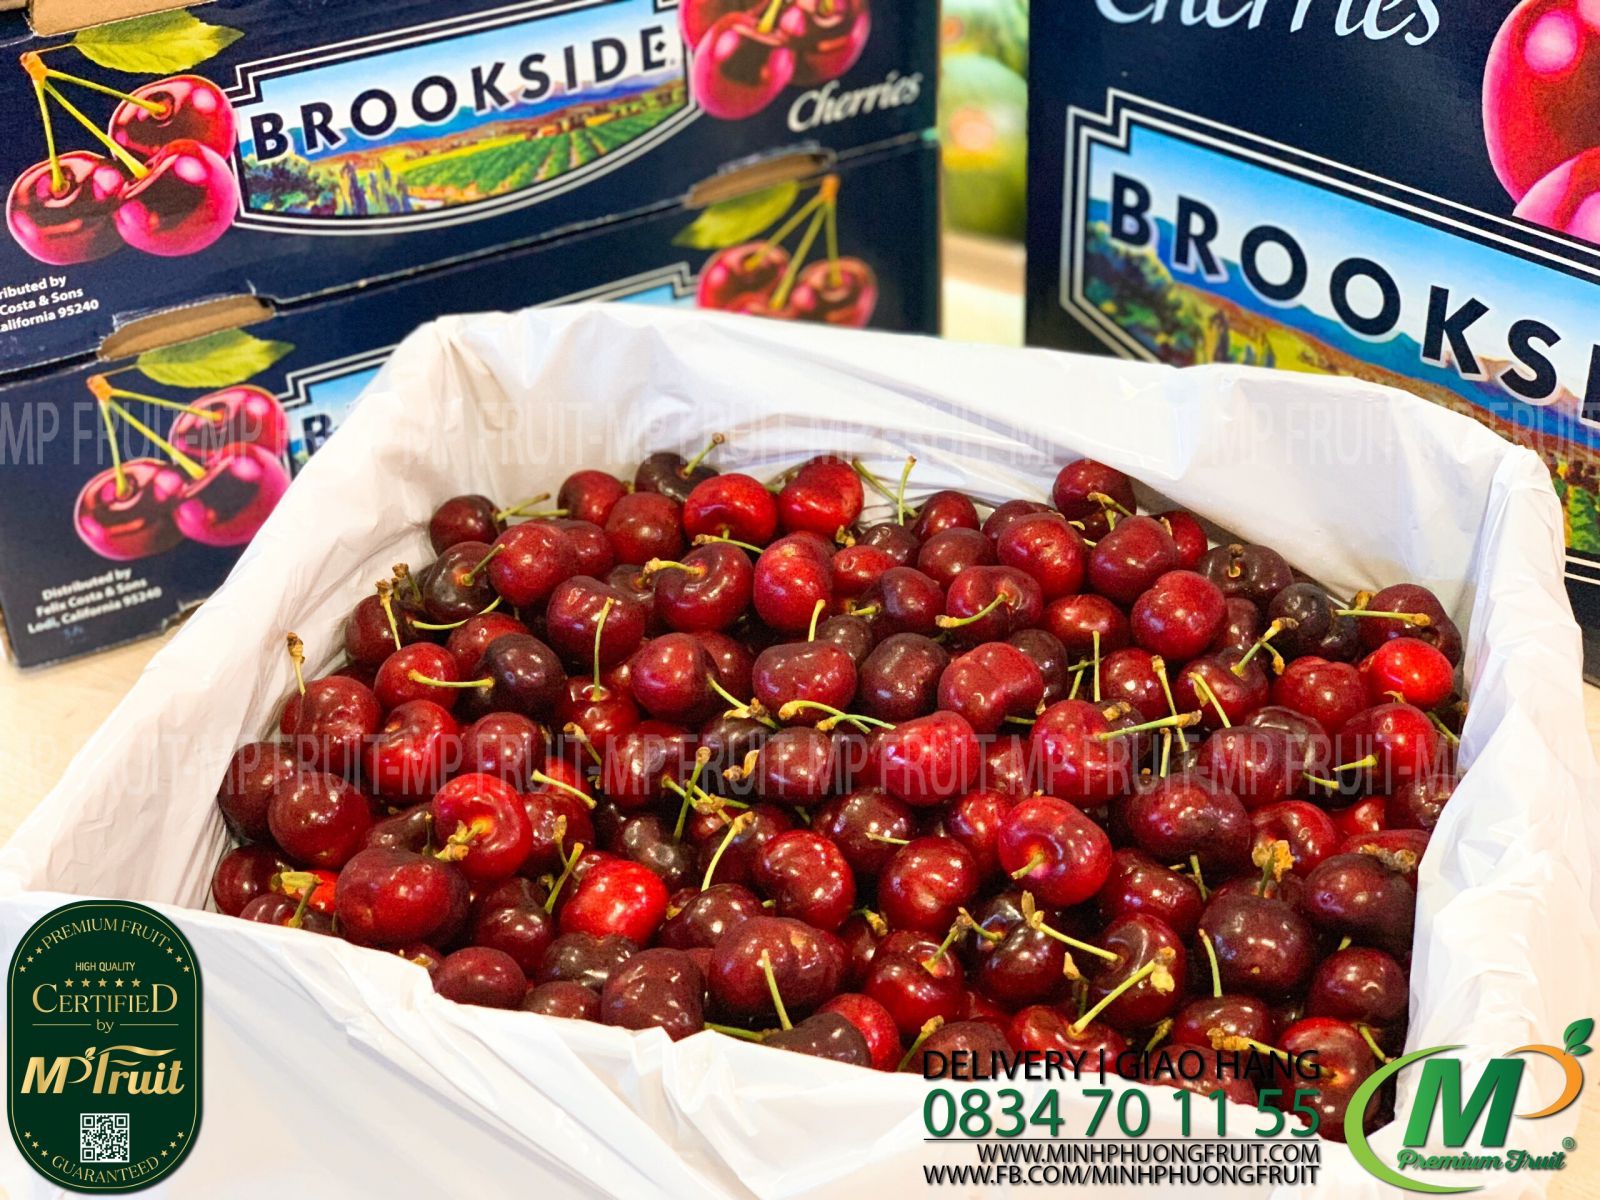 Cherry Đỏ Brookside Mỹ tại MP Fruits